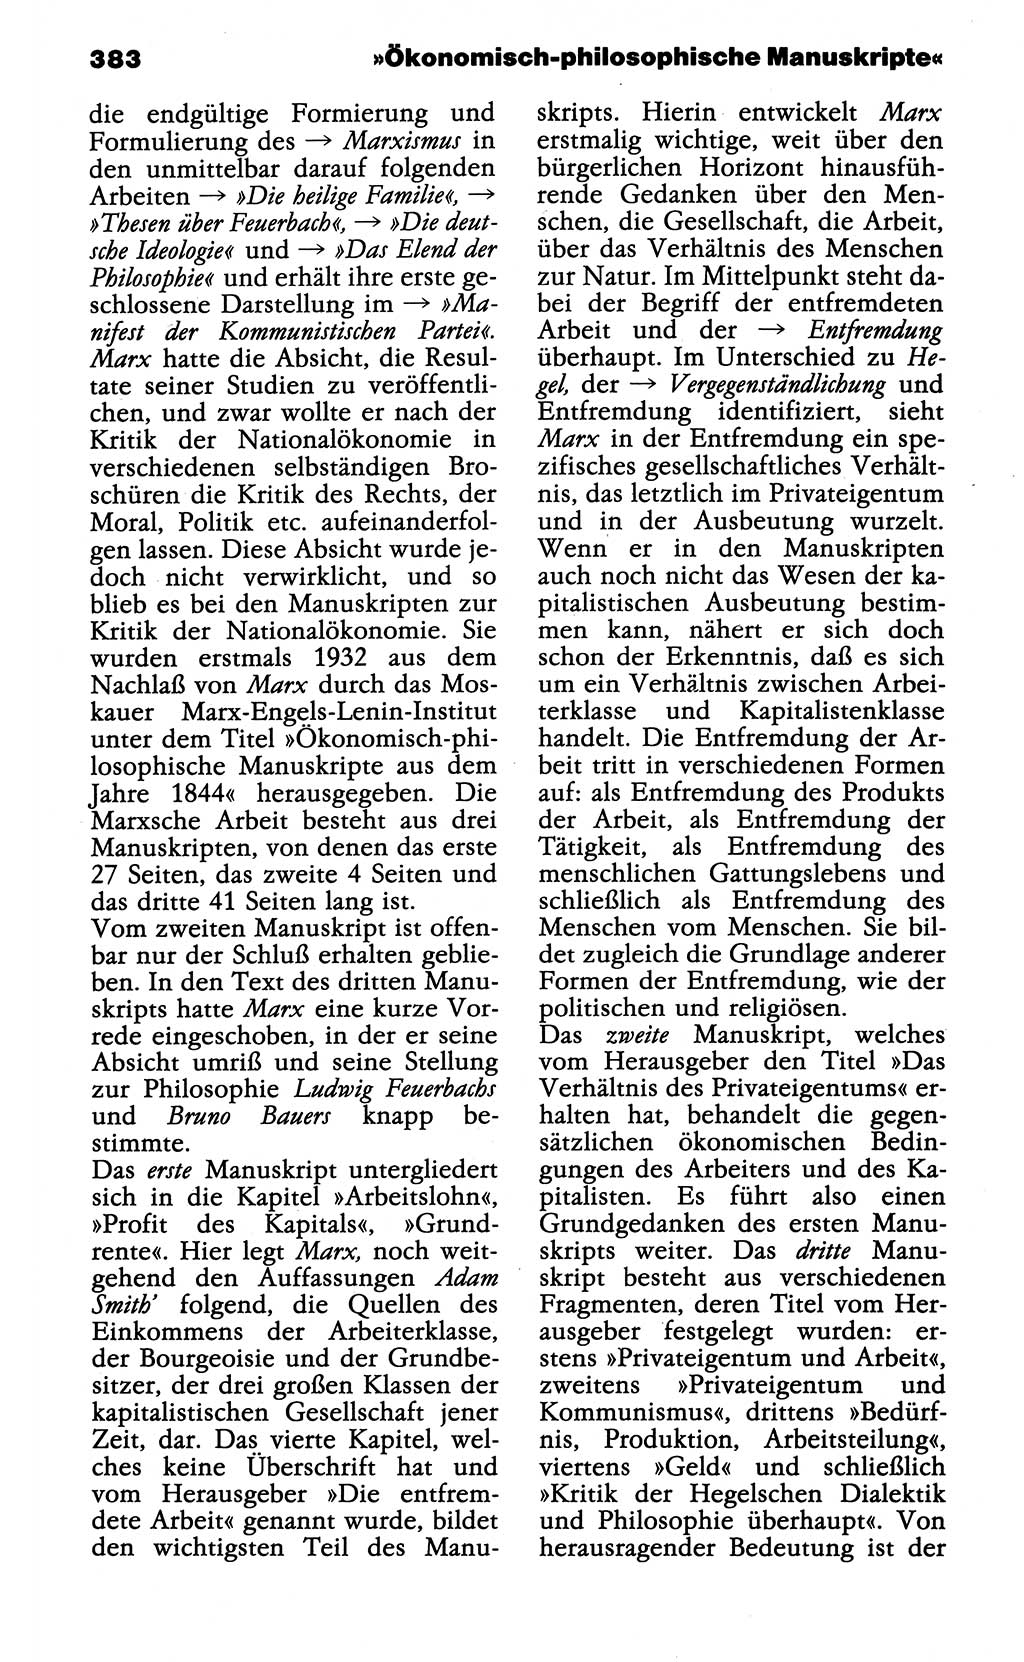 Wörterbuch der marxistisch-leninistischen Philosophie [Deutsche Demokratische Republik (DDR)] 1985, Seite 383 (Wb. ML Phil. DDR 1985, S. 383)